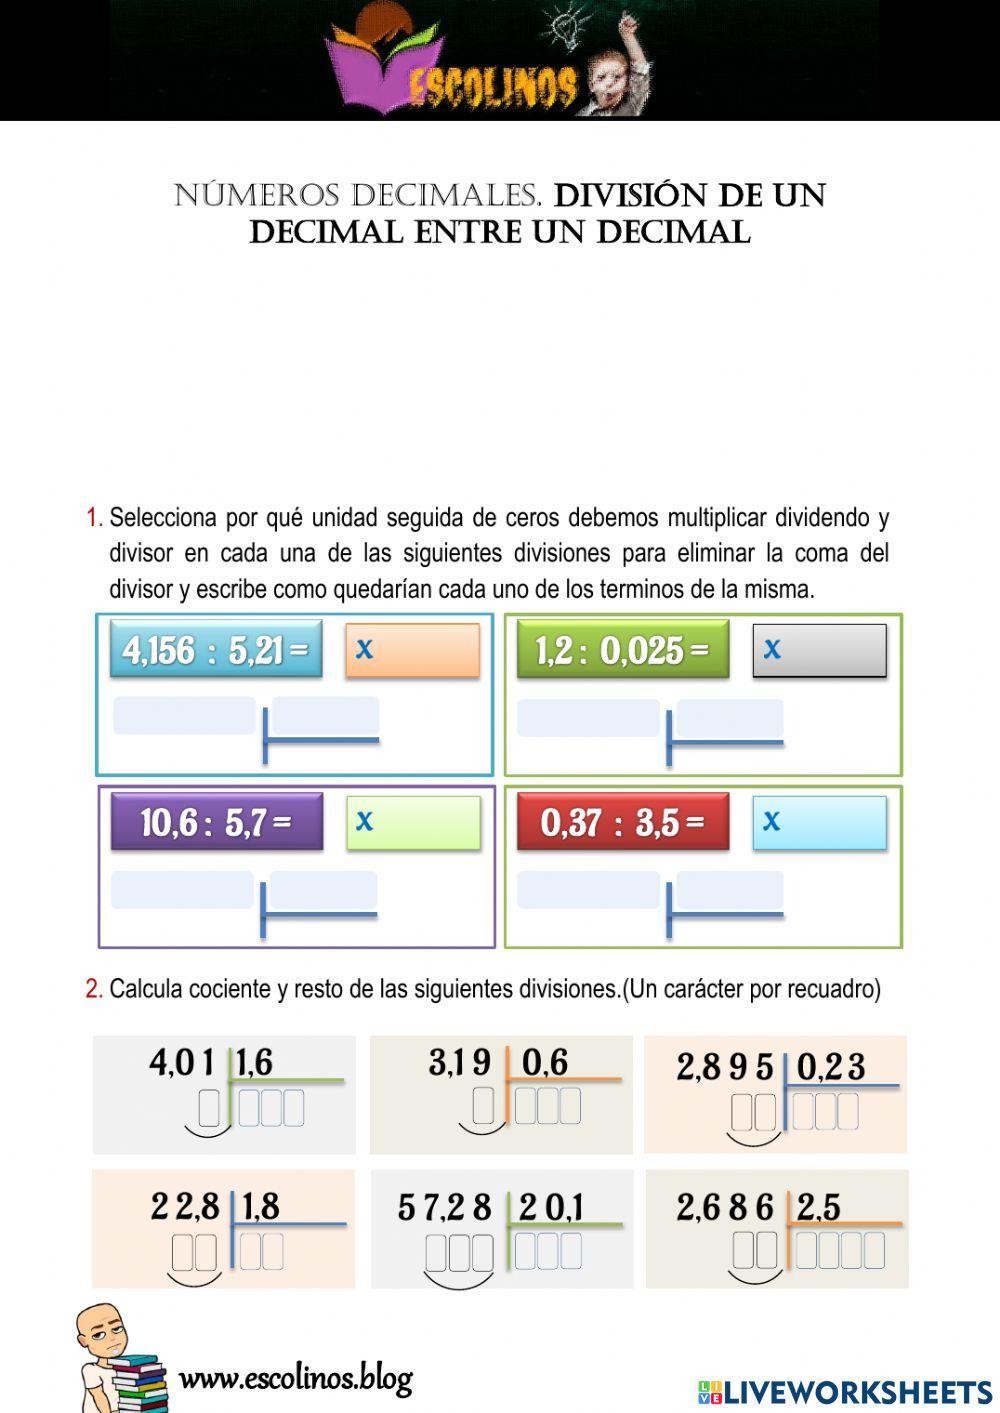 División de un decimal entre un decimal